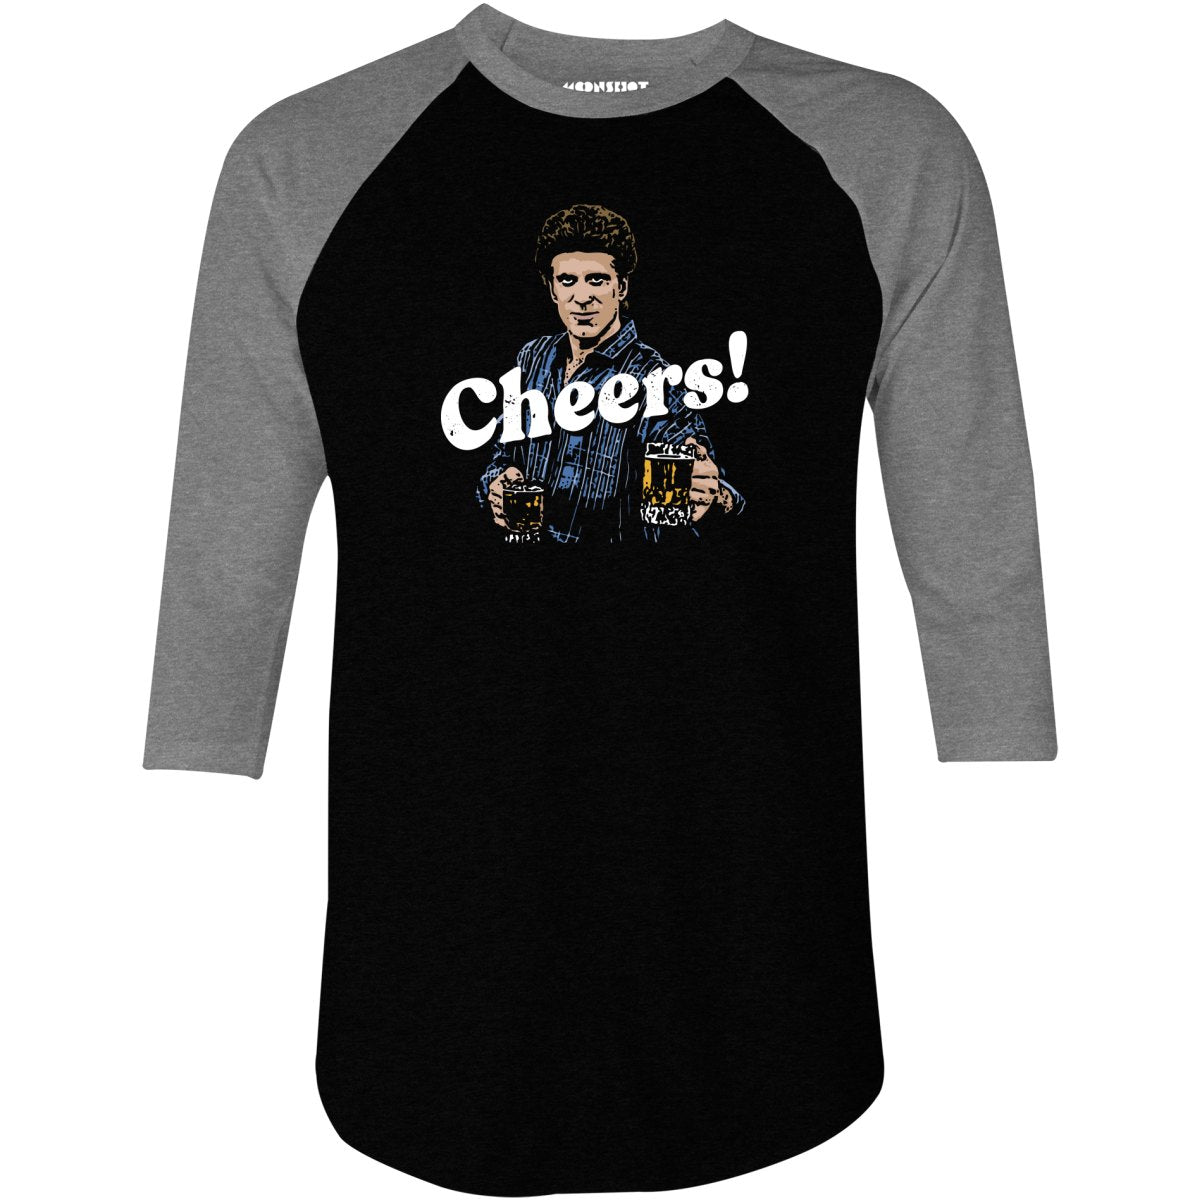 Cheers! - 3/4 Sleeve Raglan T-Shirt